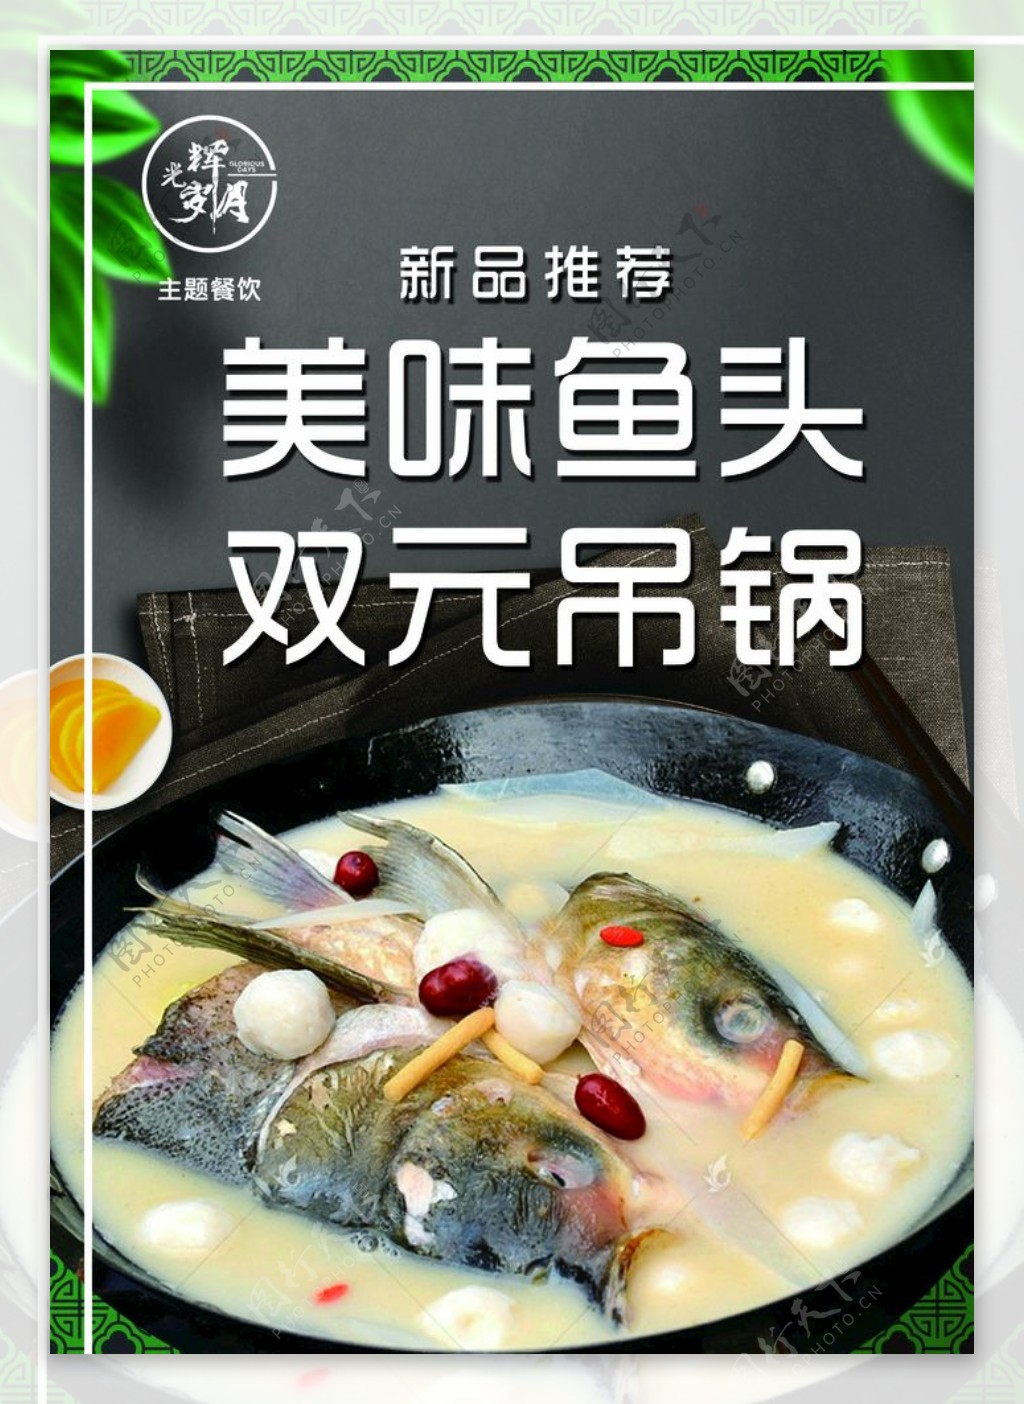 鱼头吊锅美食海报图片